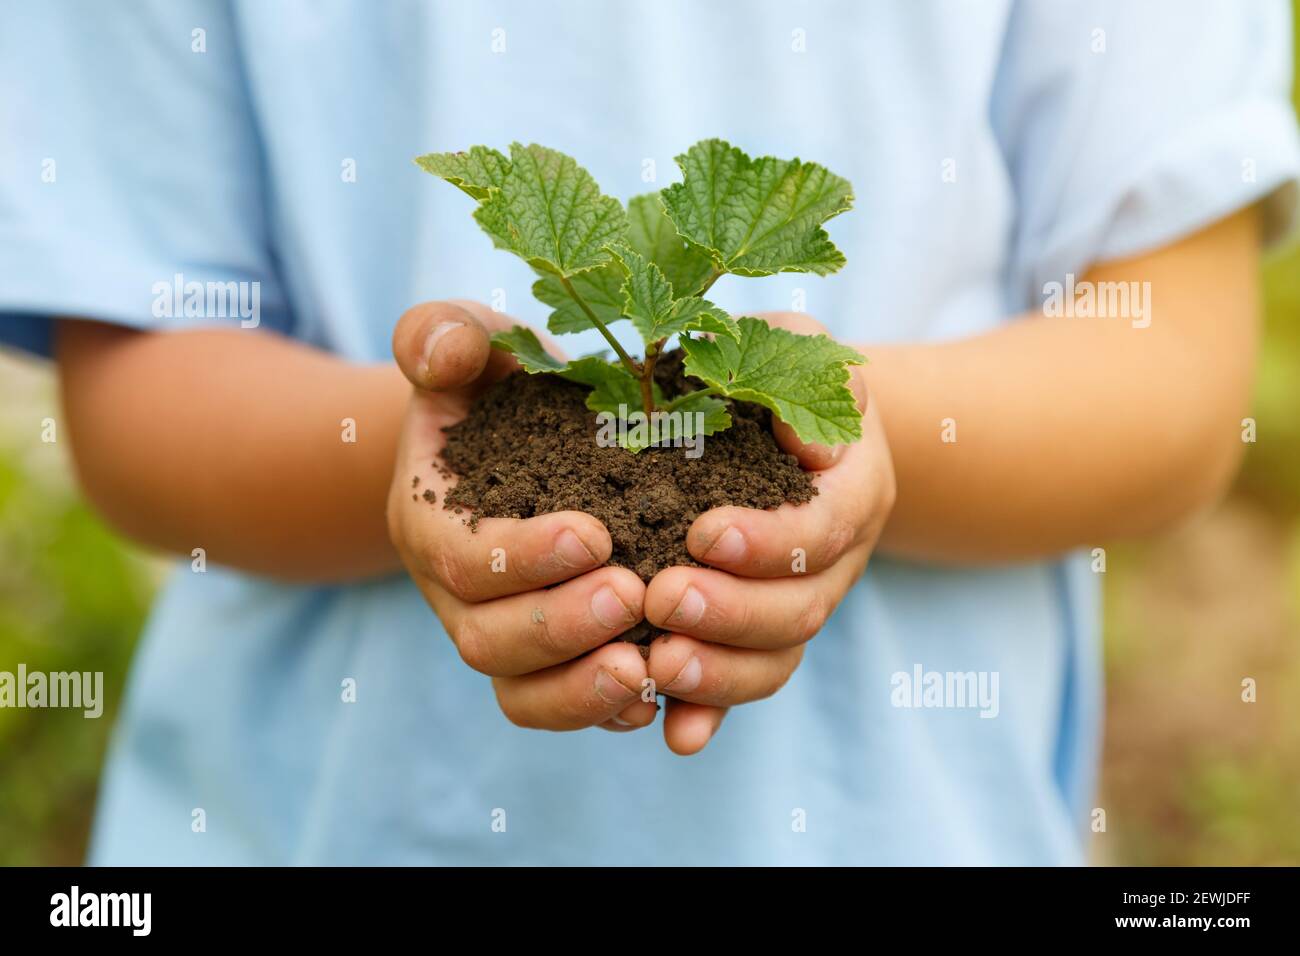 Neues Leben Pflanze Kind Hände halten Baum Natur leben Konzept Garten Gartenarbeit. Stockfoto